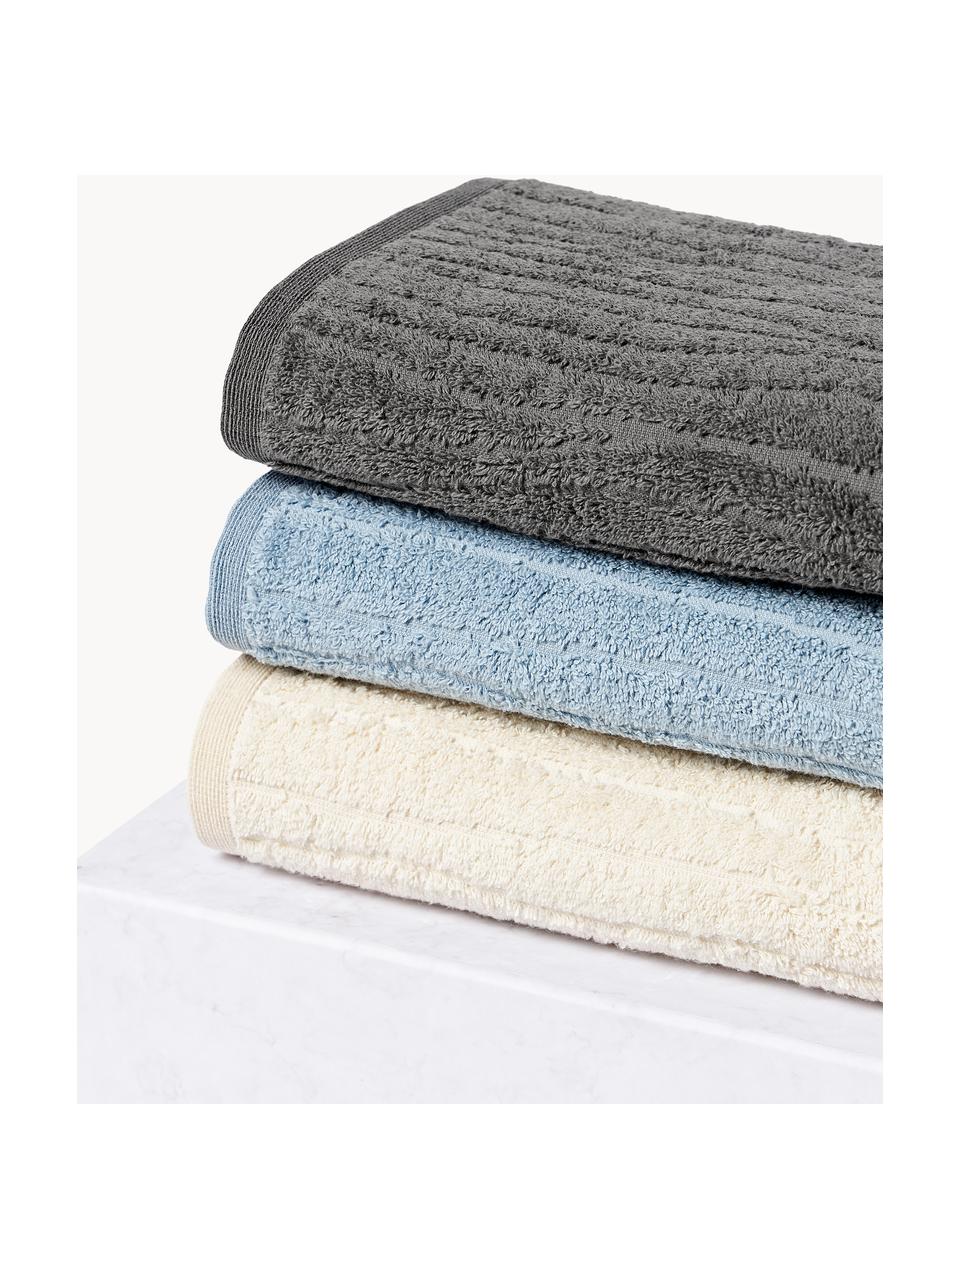 Ręcznik z bawełny Audrina, różne rozmiary, Ciemny szary, Ręcznik, S 50 x D 100 cm, 2 szt.